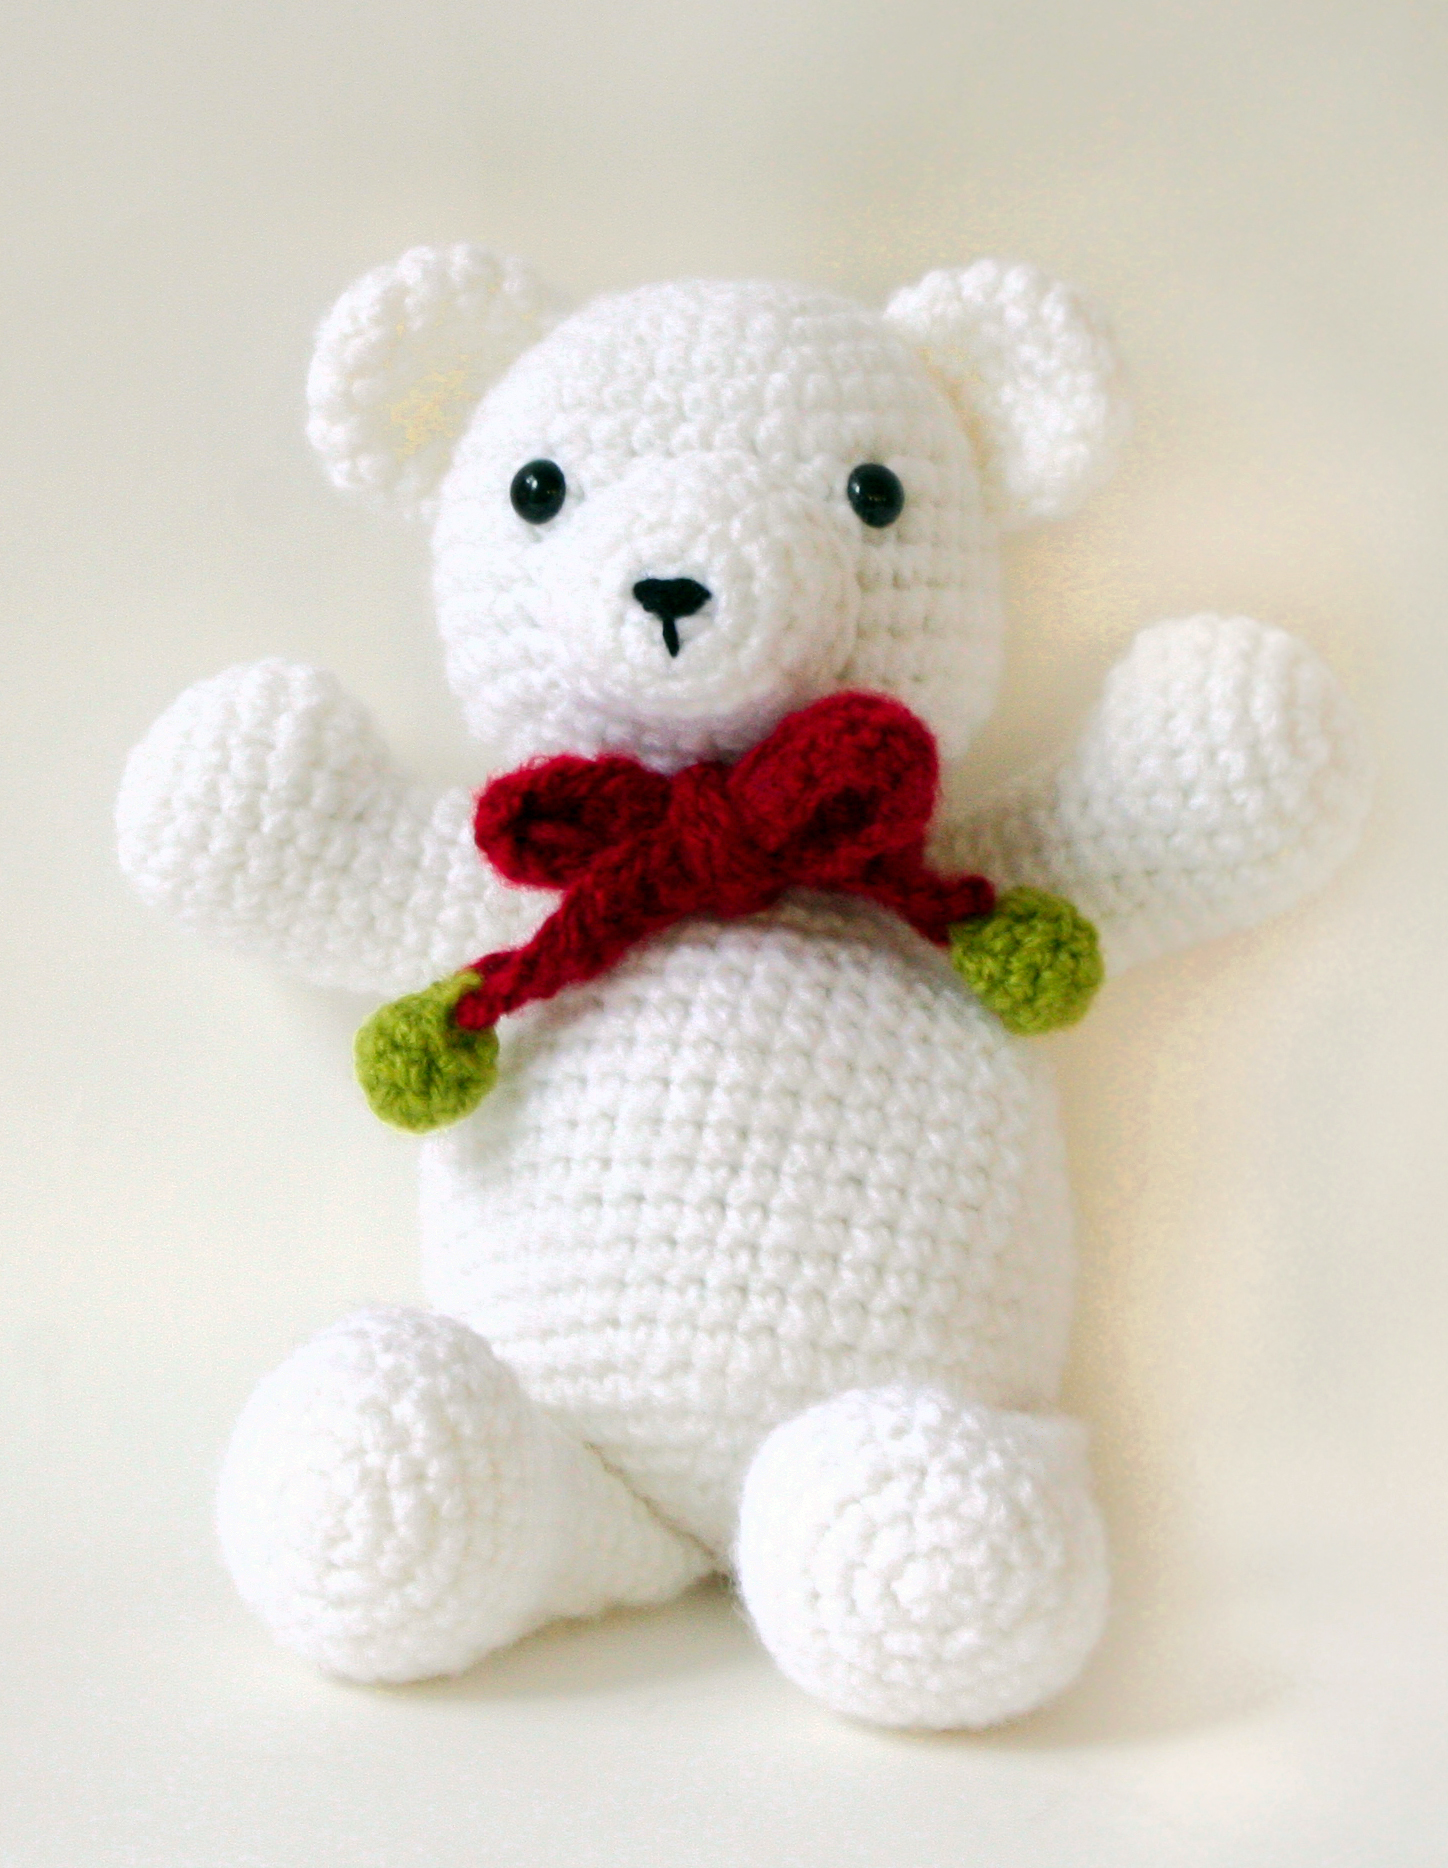 Free teddy bear crochet pattern